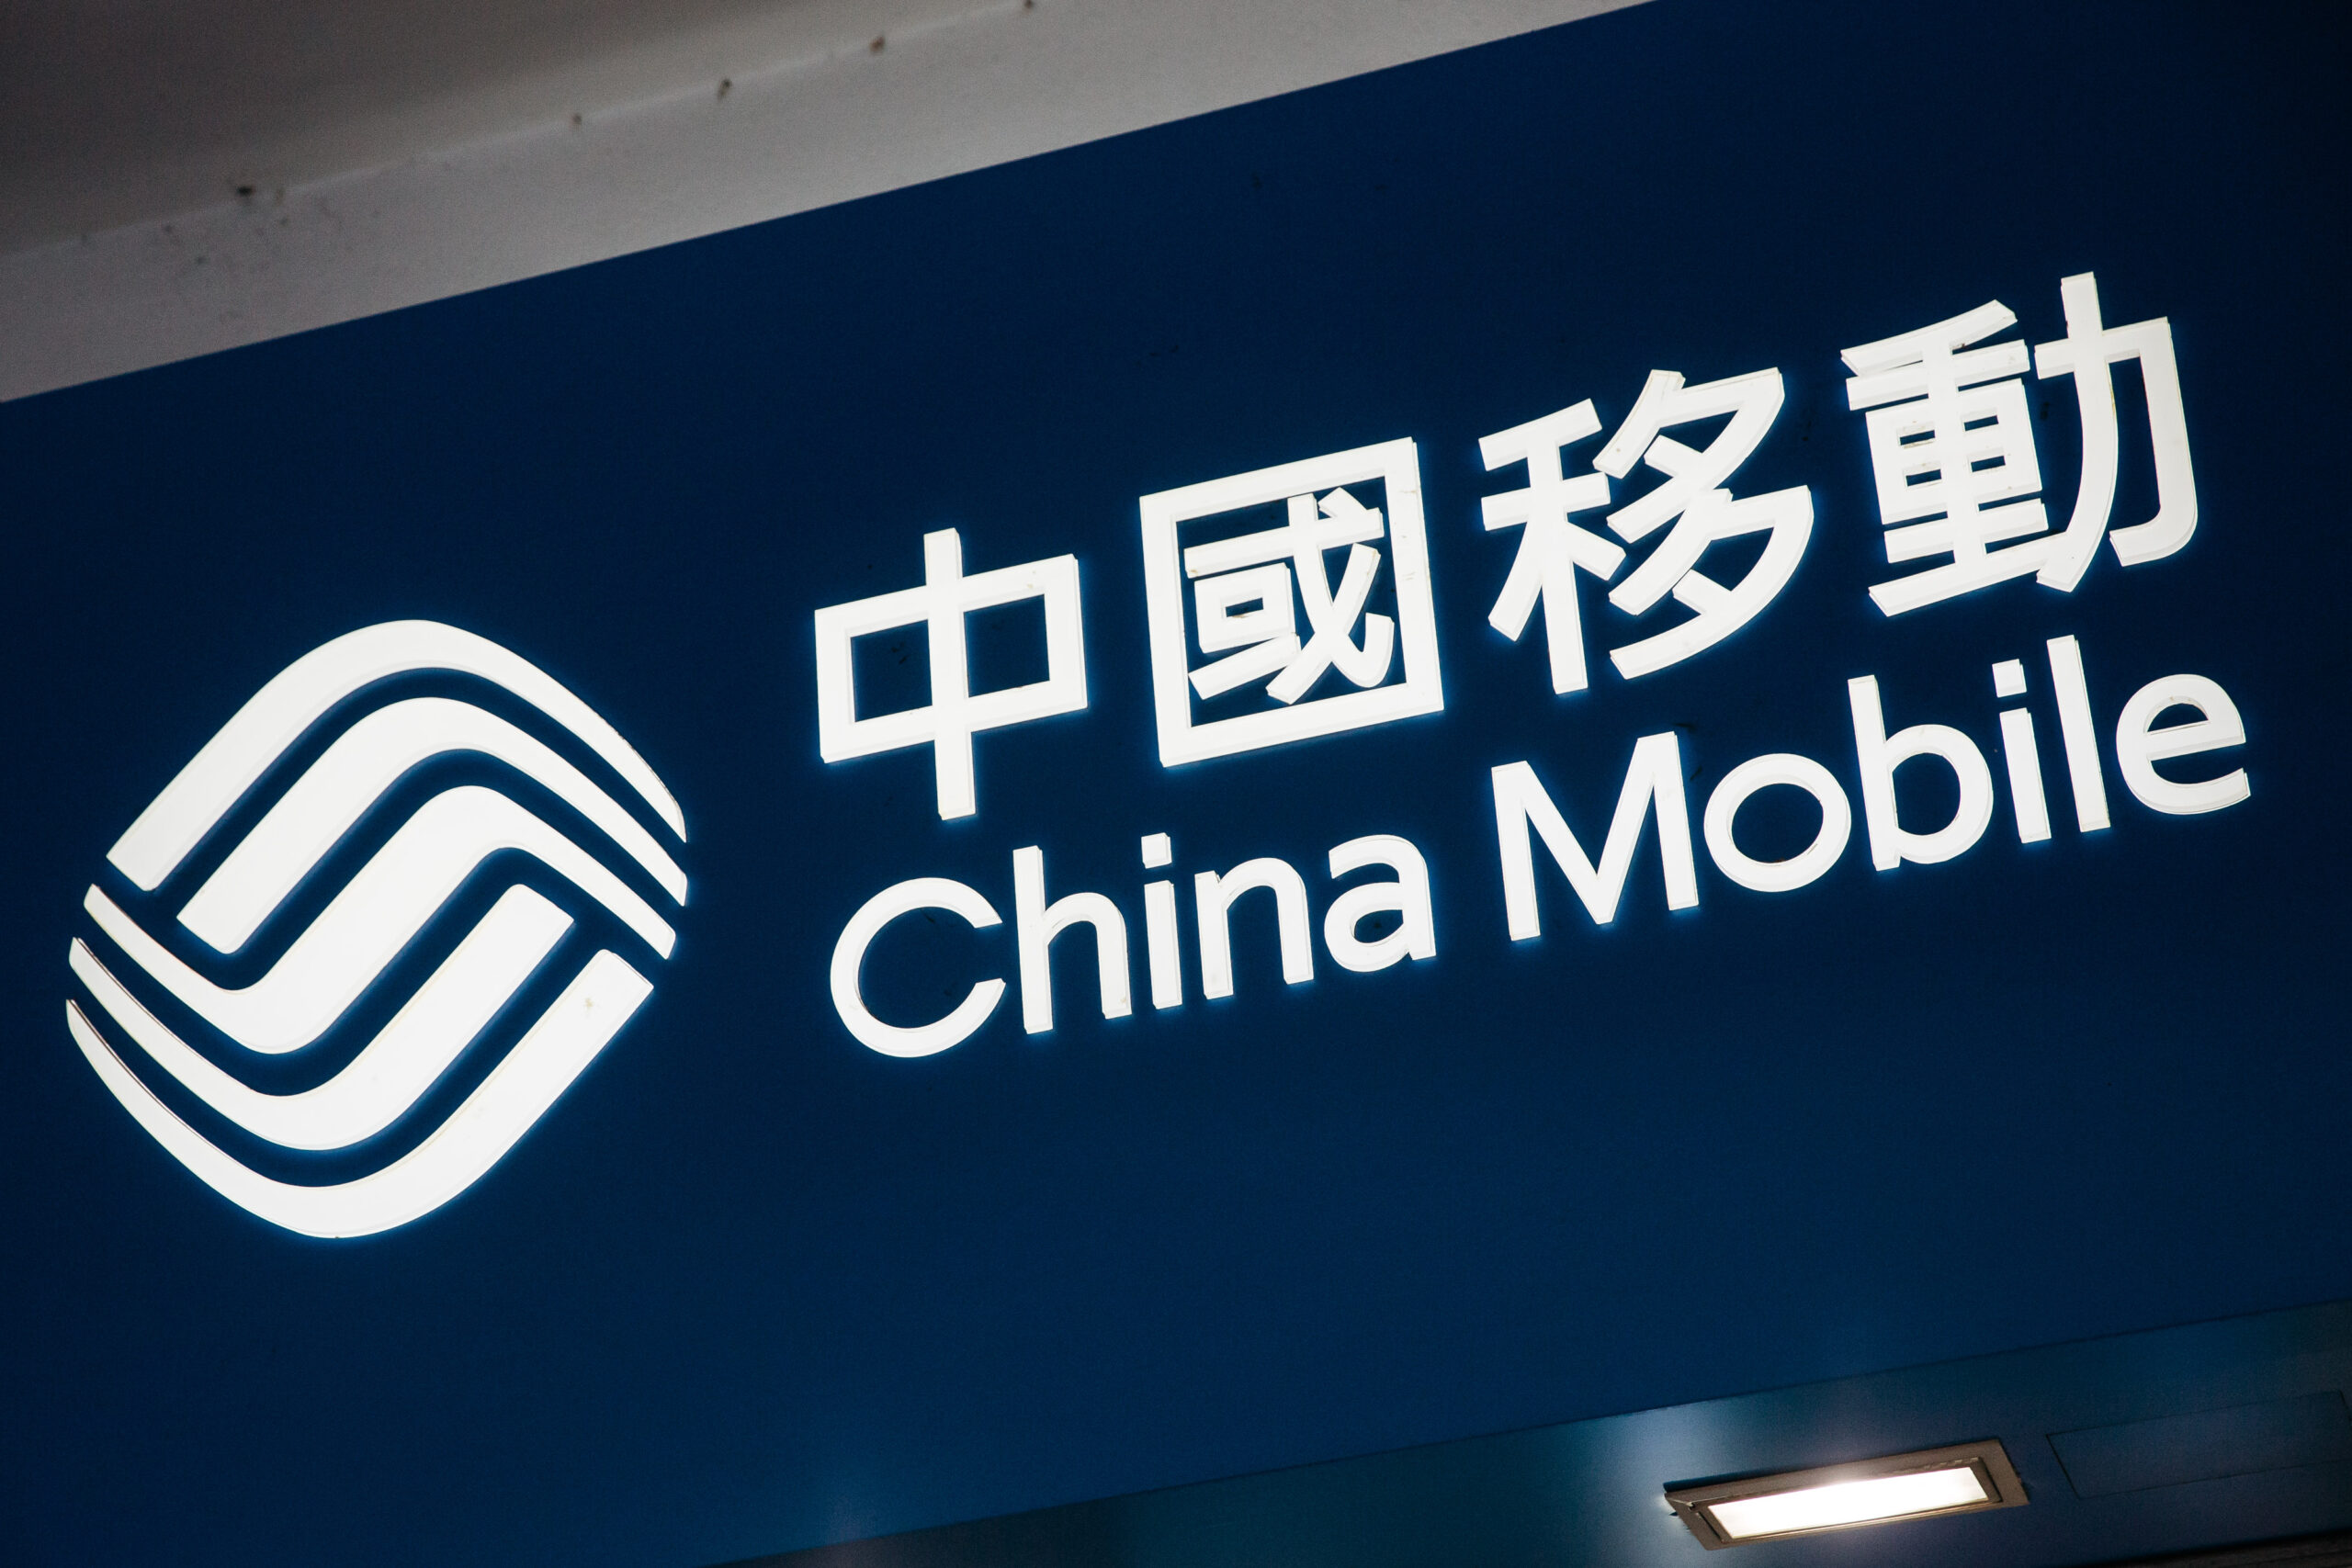 China Mobile s'introduit à la Bourse de Shanghai après l'interdiction américaine - Burzovnisvet.cz - Actions, bourse, forex, matières premières, IPO, obligations